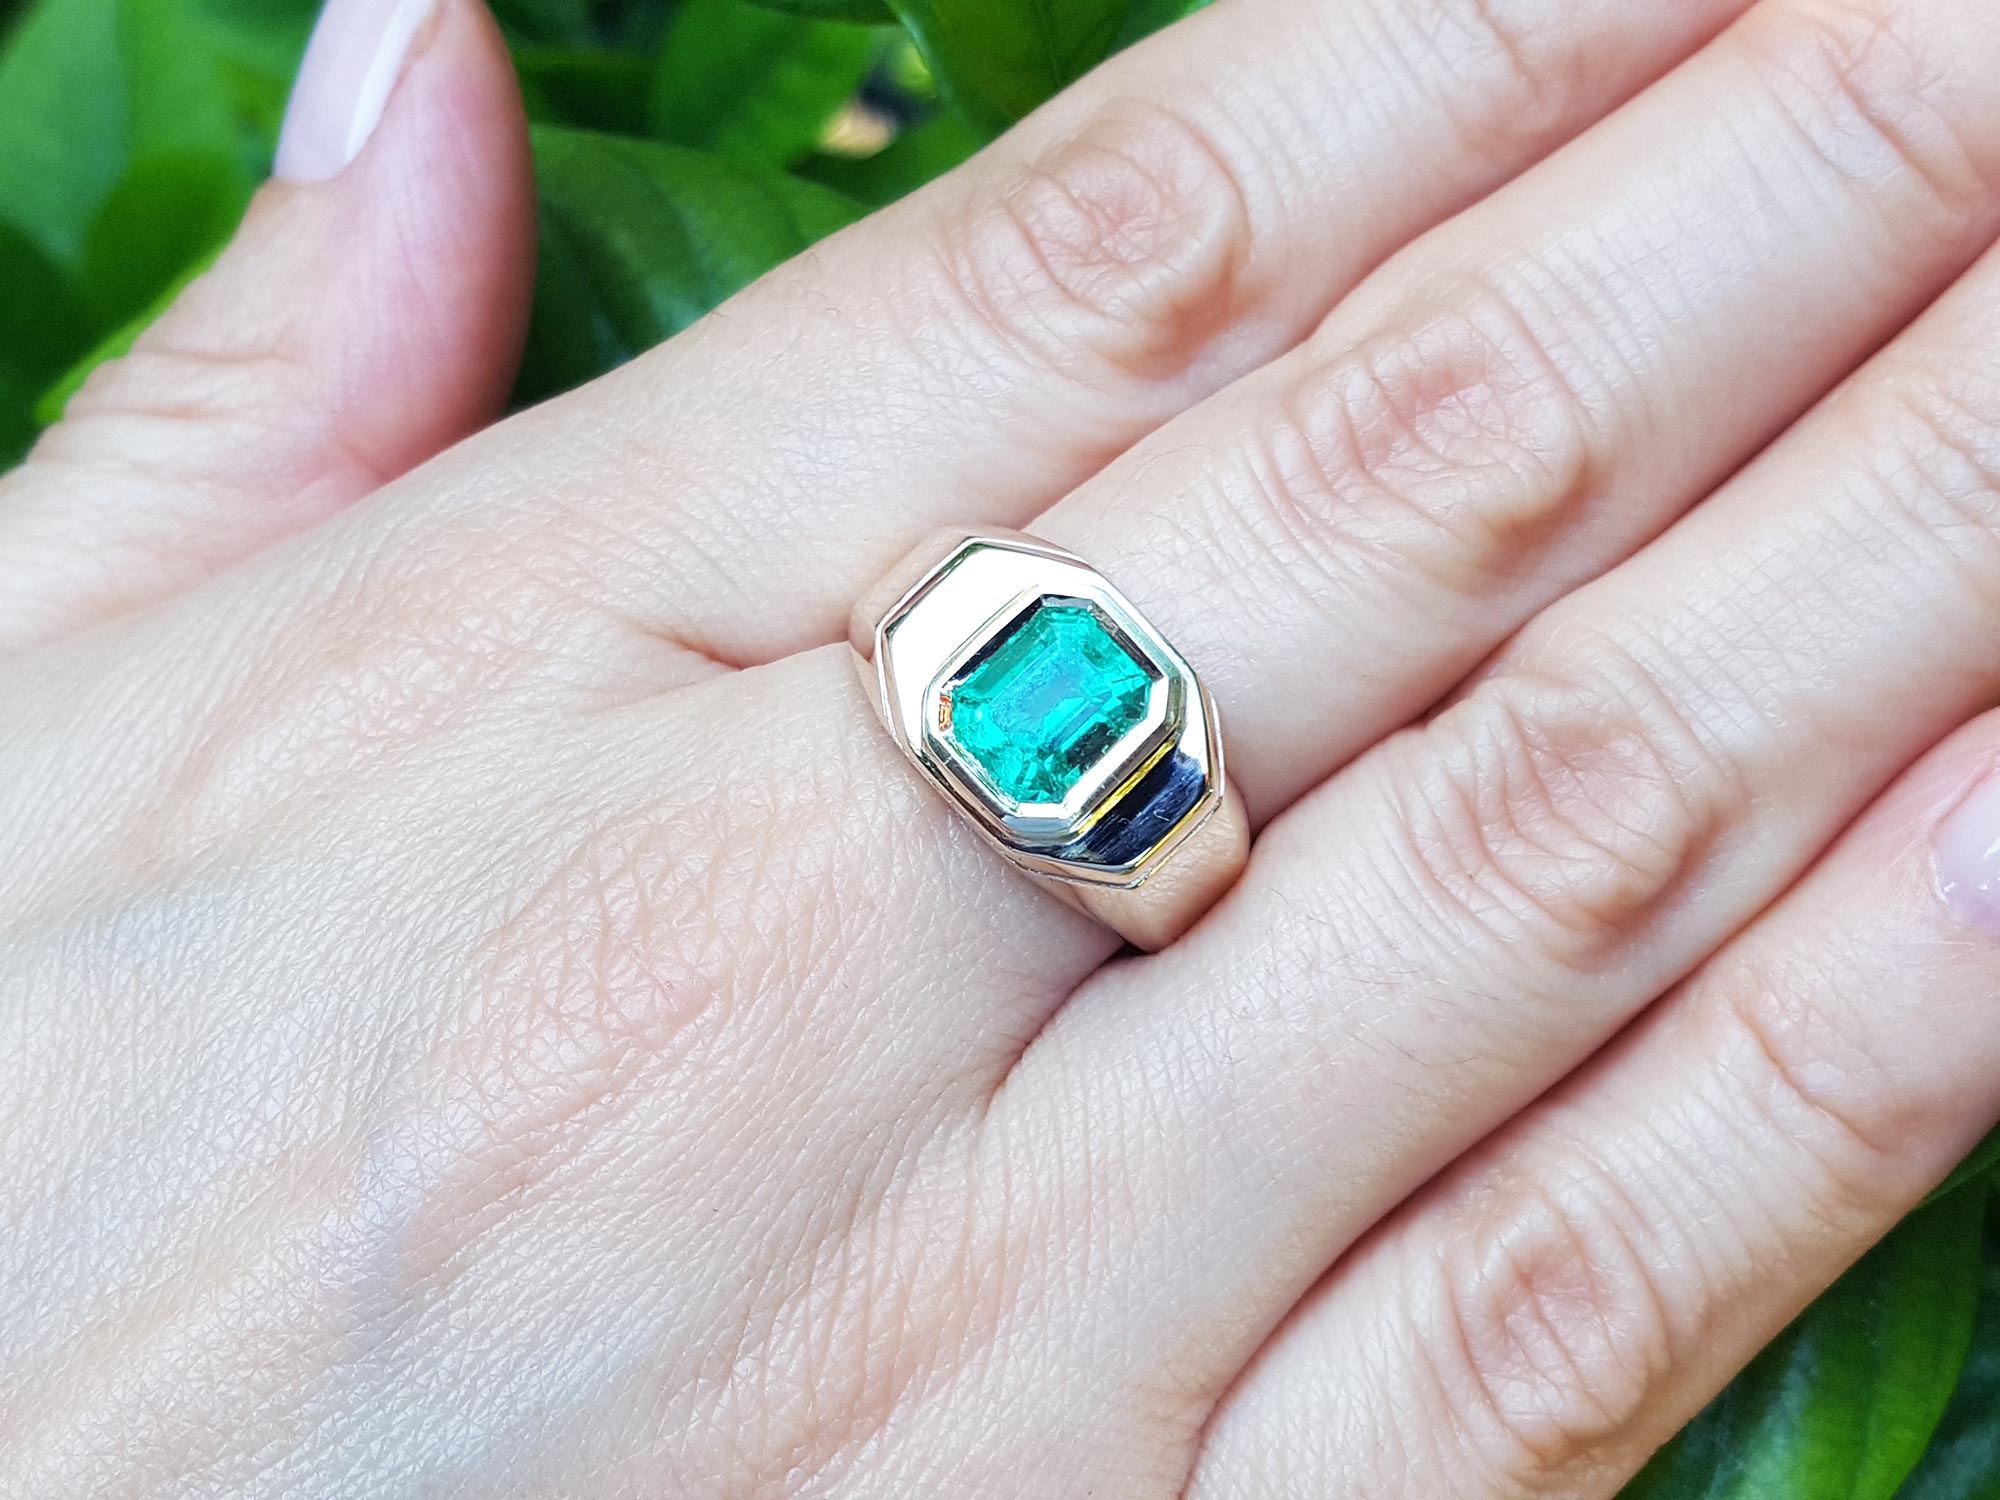 Emerald-cut mens emerald ring